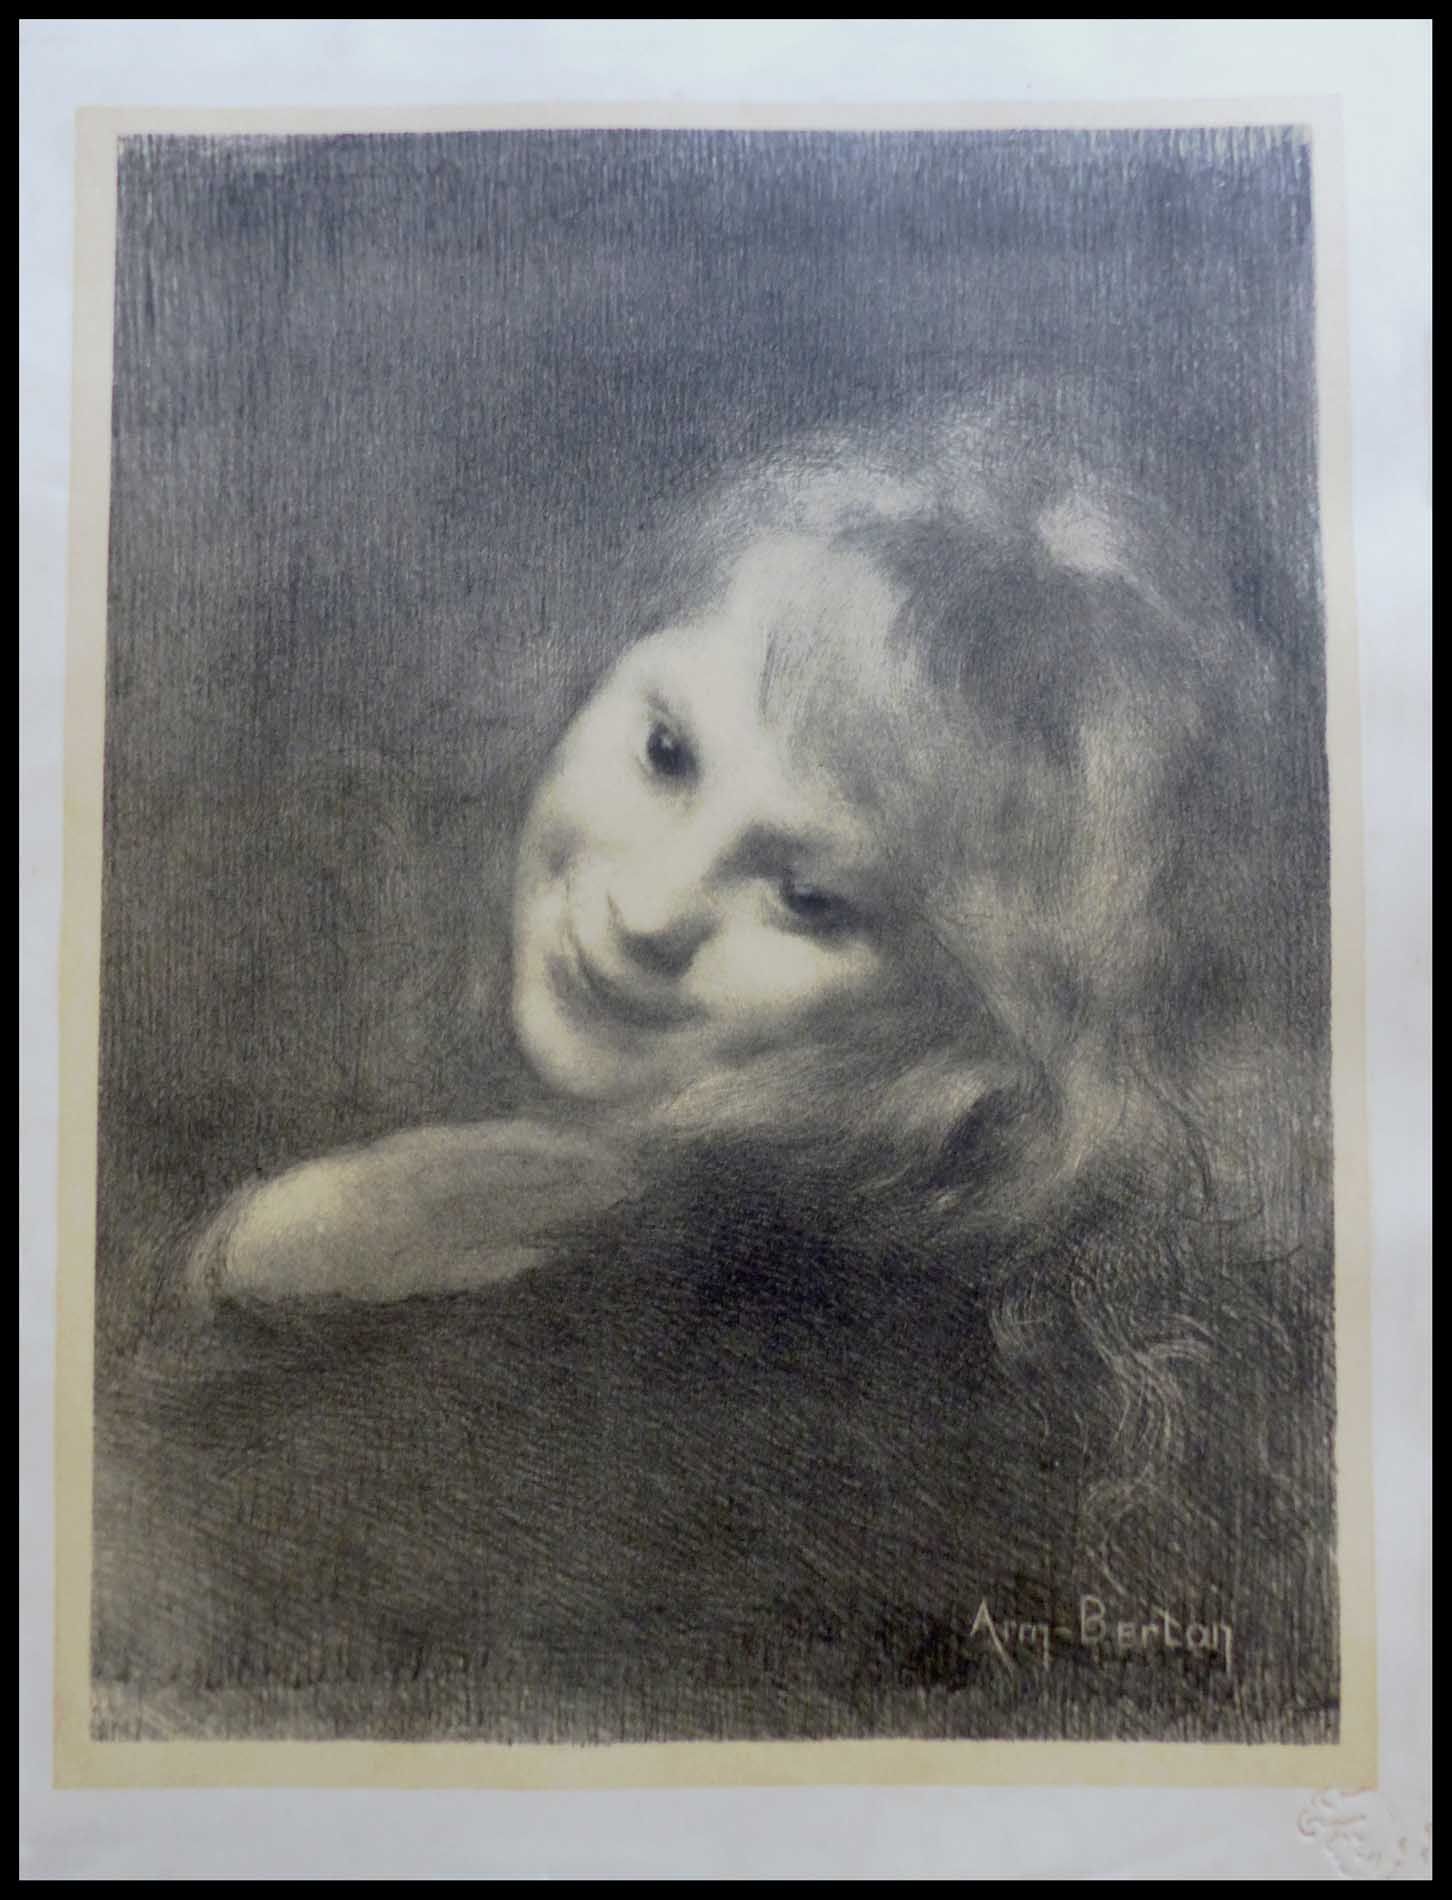 E. Frey Armand BERTON : (1864 - 1927)

RIEUSE

1897

Litografía original

Obra f&hellip;